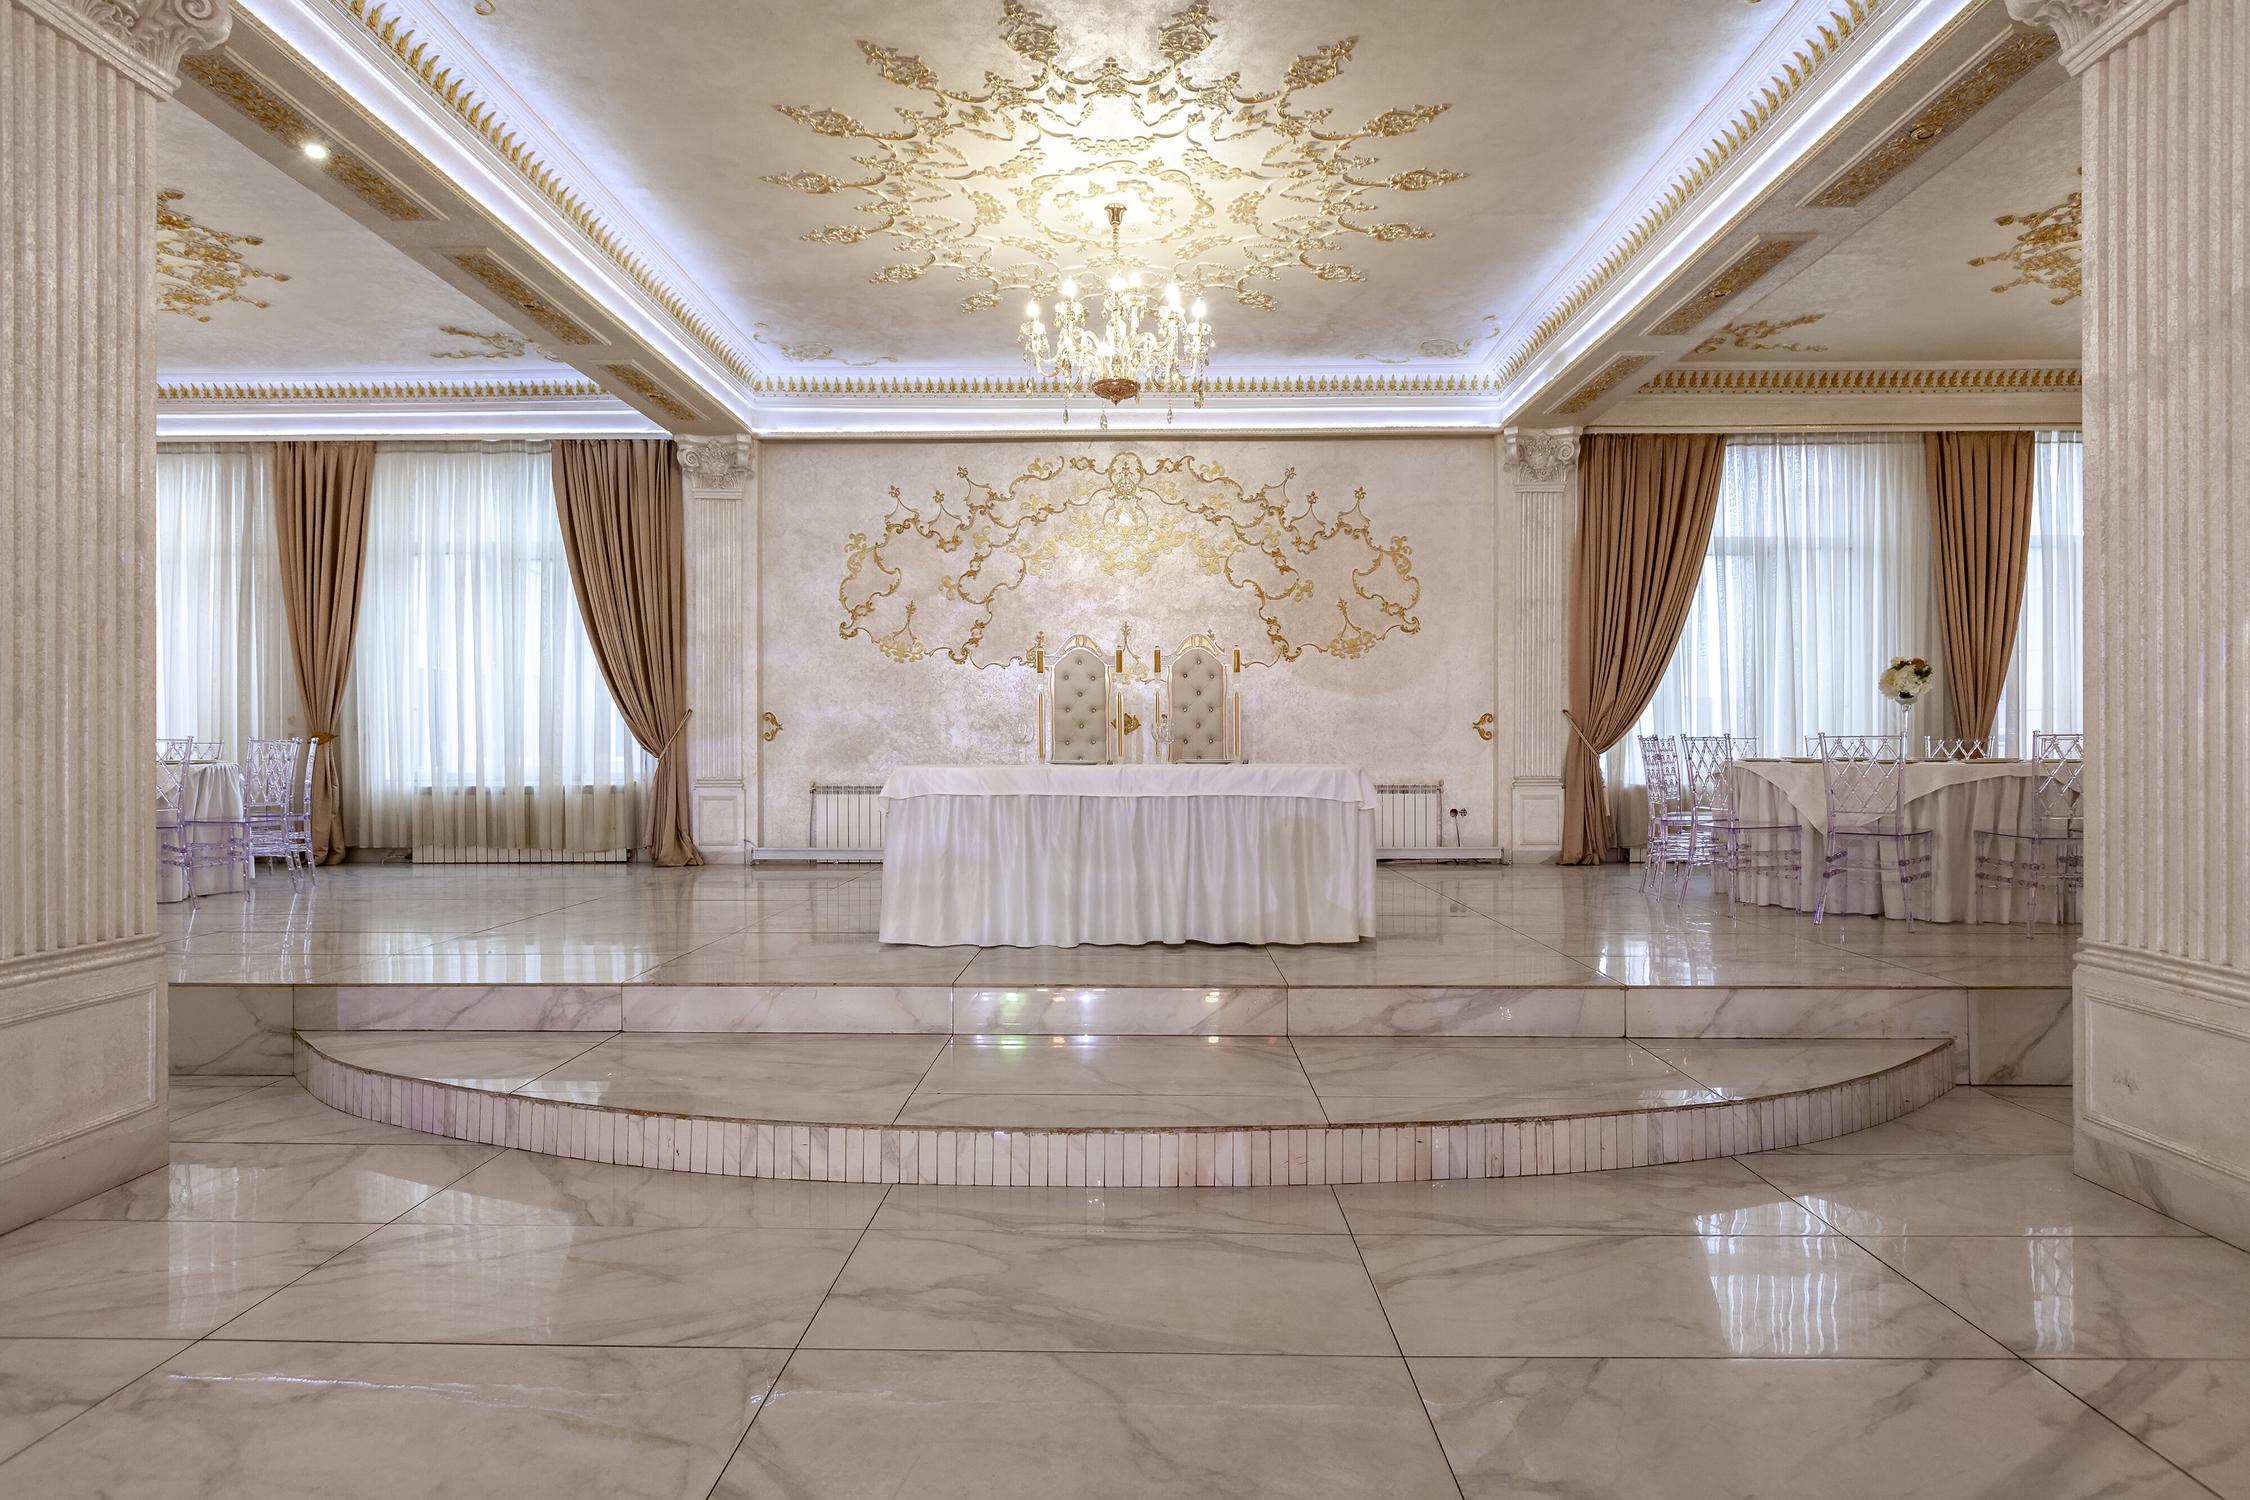 Банкетный зал для свадьбы до 500 гостей Шарль Азнавур в Химках и Москве